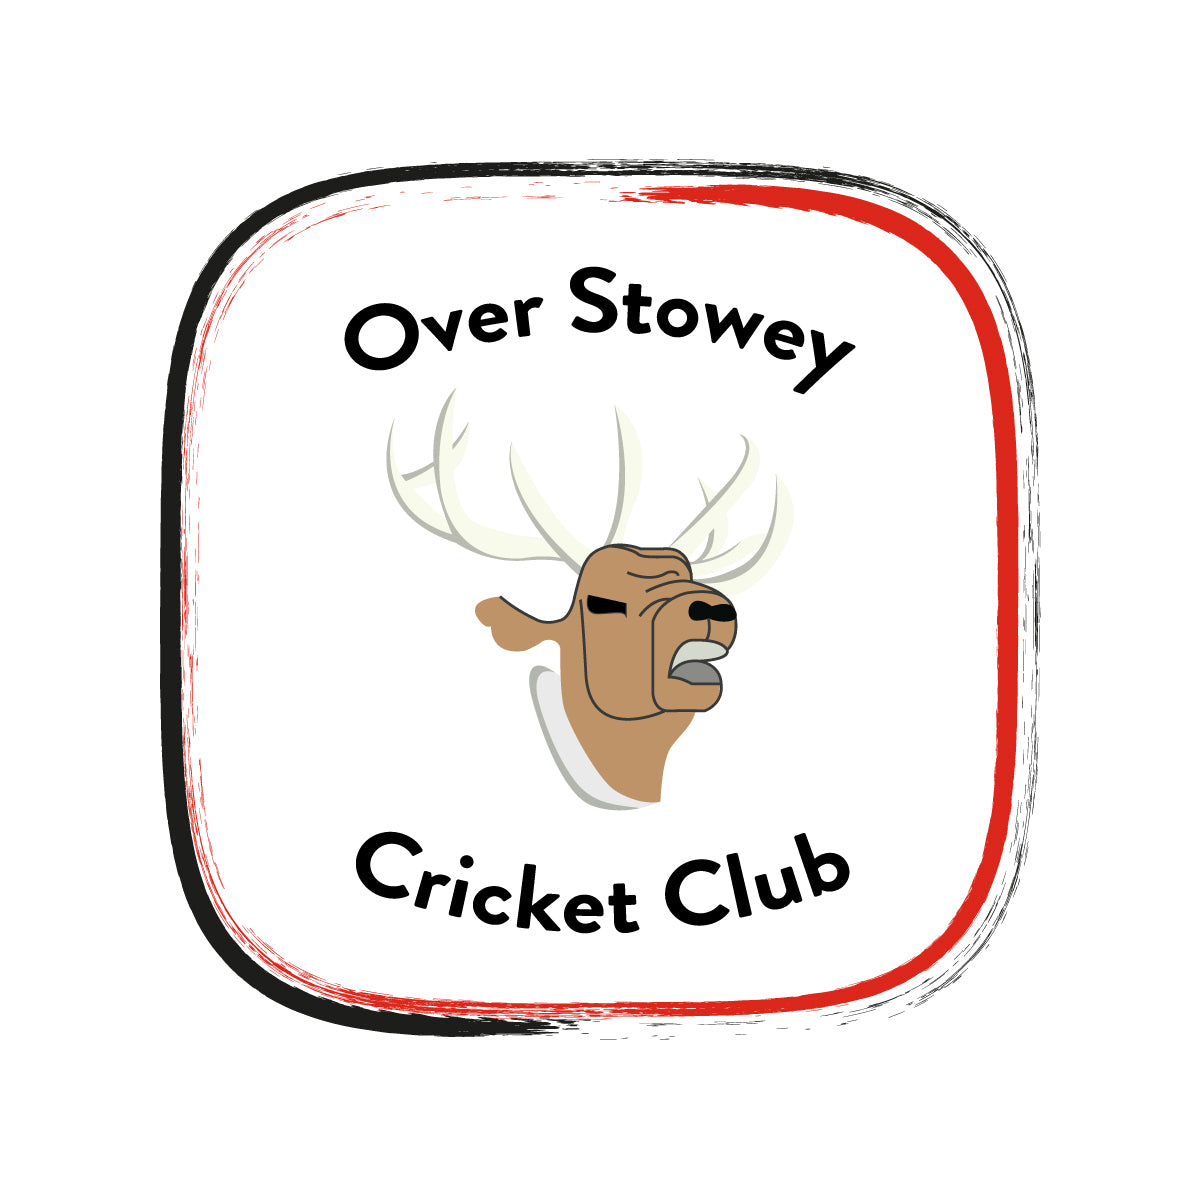 Over Stowey C.C.